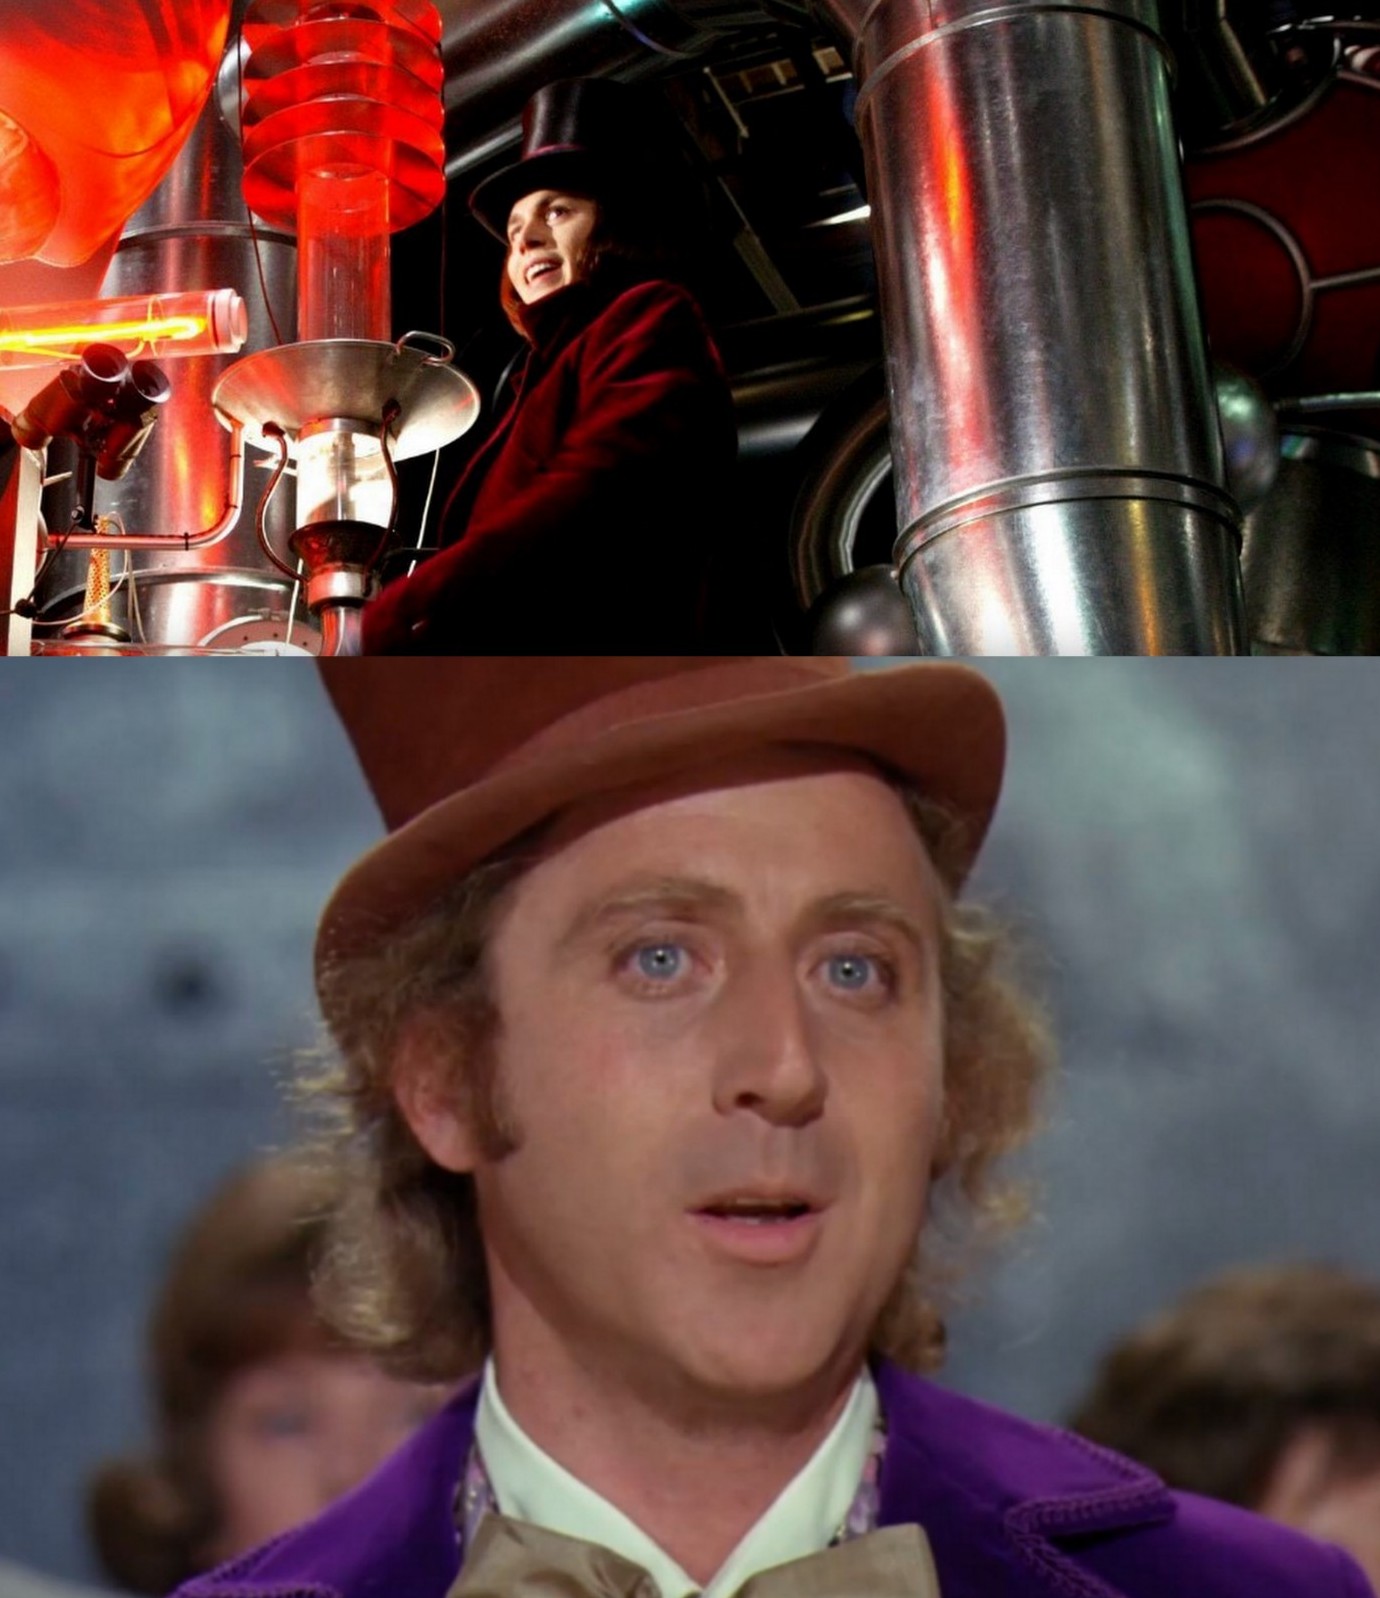 I "Willy Wonka och chokladfabriken" från 1971 fick vi se Gene Wilder spela den egendomliga Willy Wonka. 2005 var det dags igen, då spelade Johnny Depp godistillverkaren i "Charlie och chokladfabriken".